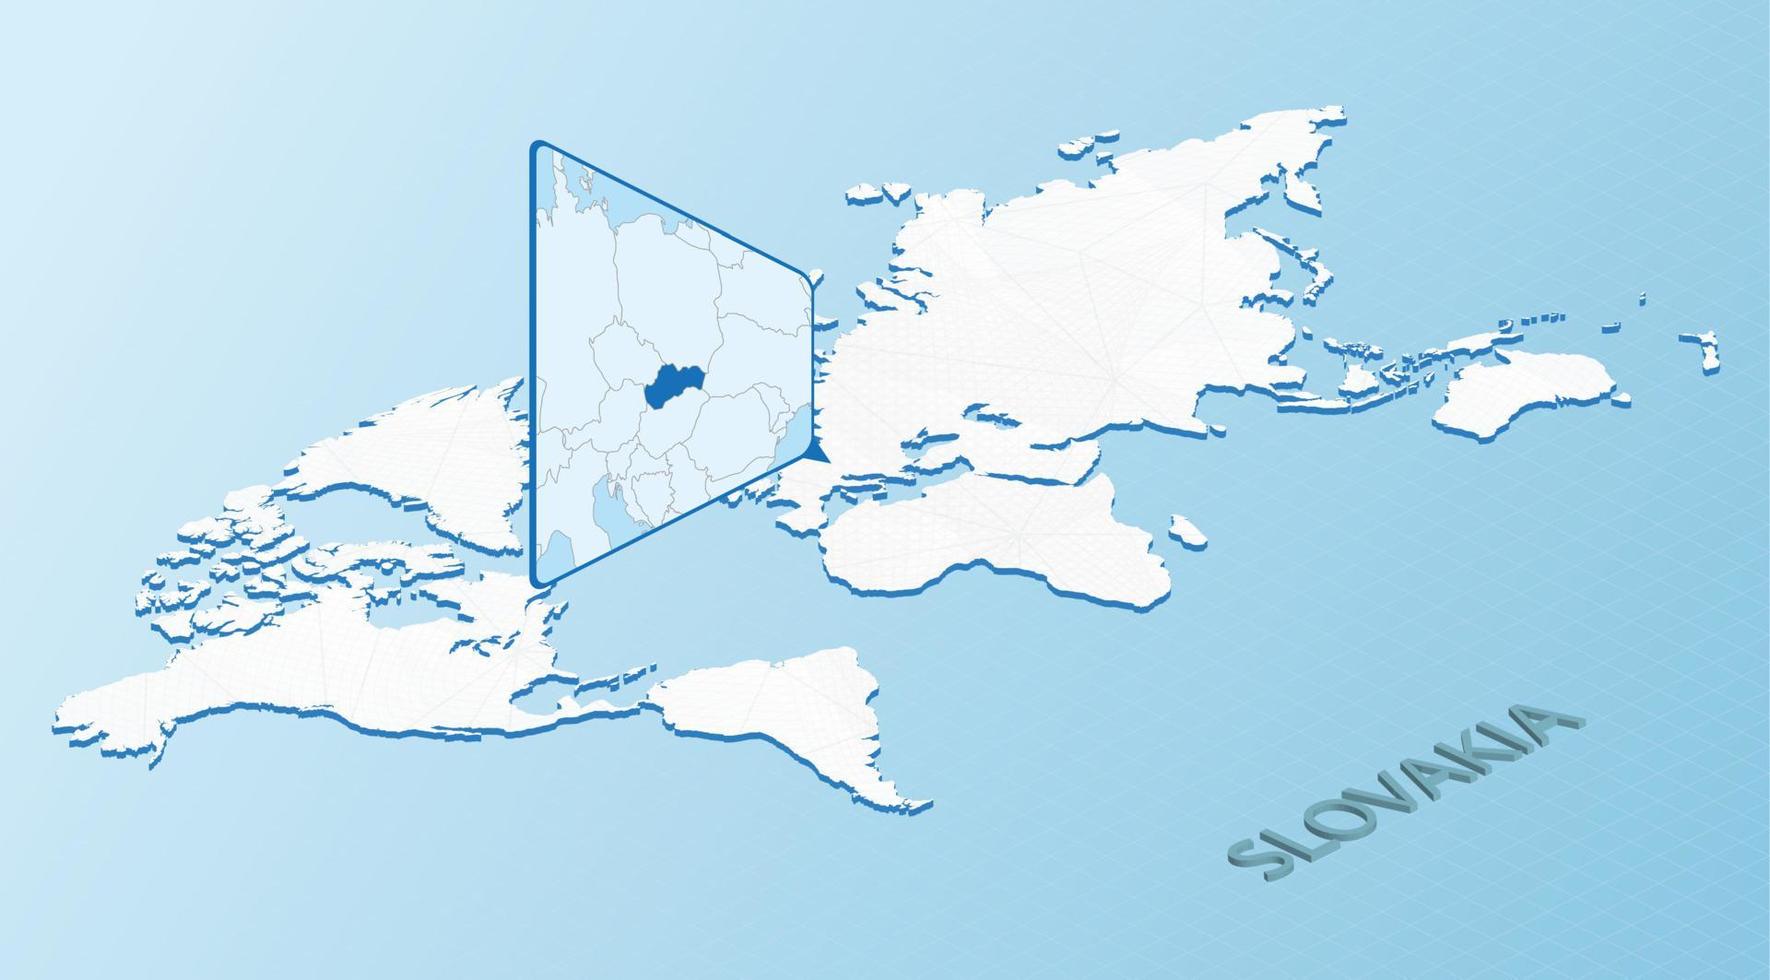 mapa mundial en estilo isométrico con mapa detallado de eslovaquia. mapa azul claro de eslovaquia con mapa del mundo abstracto. vector